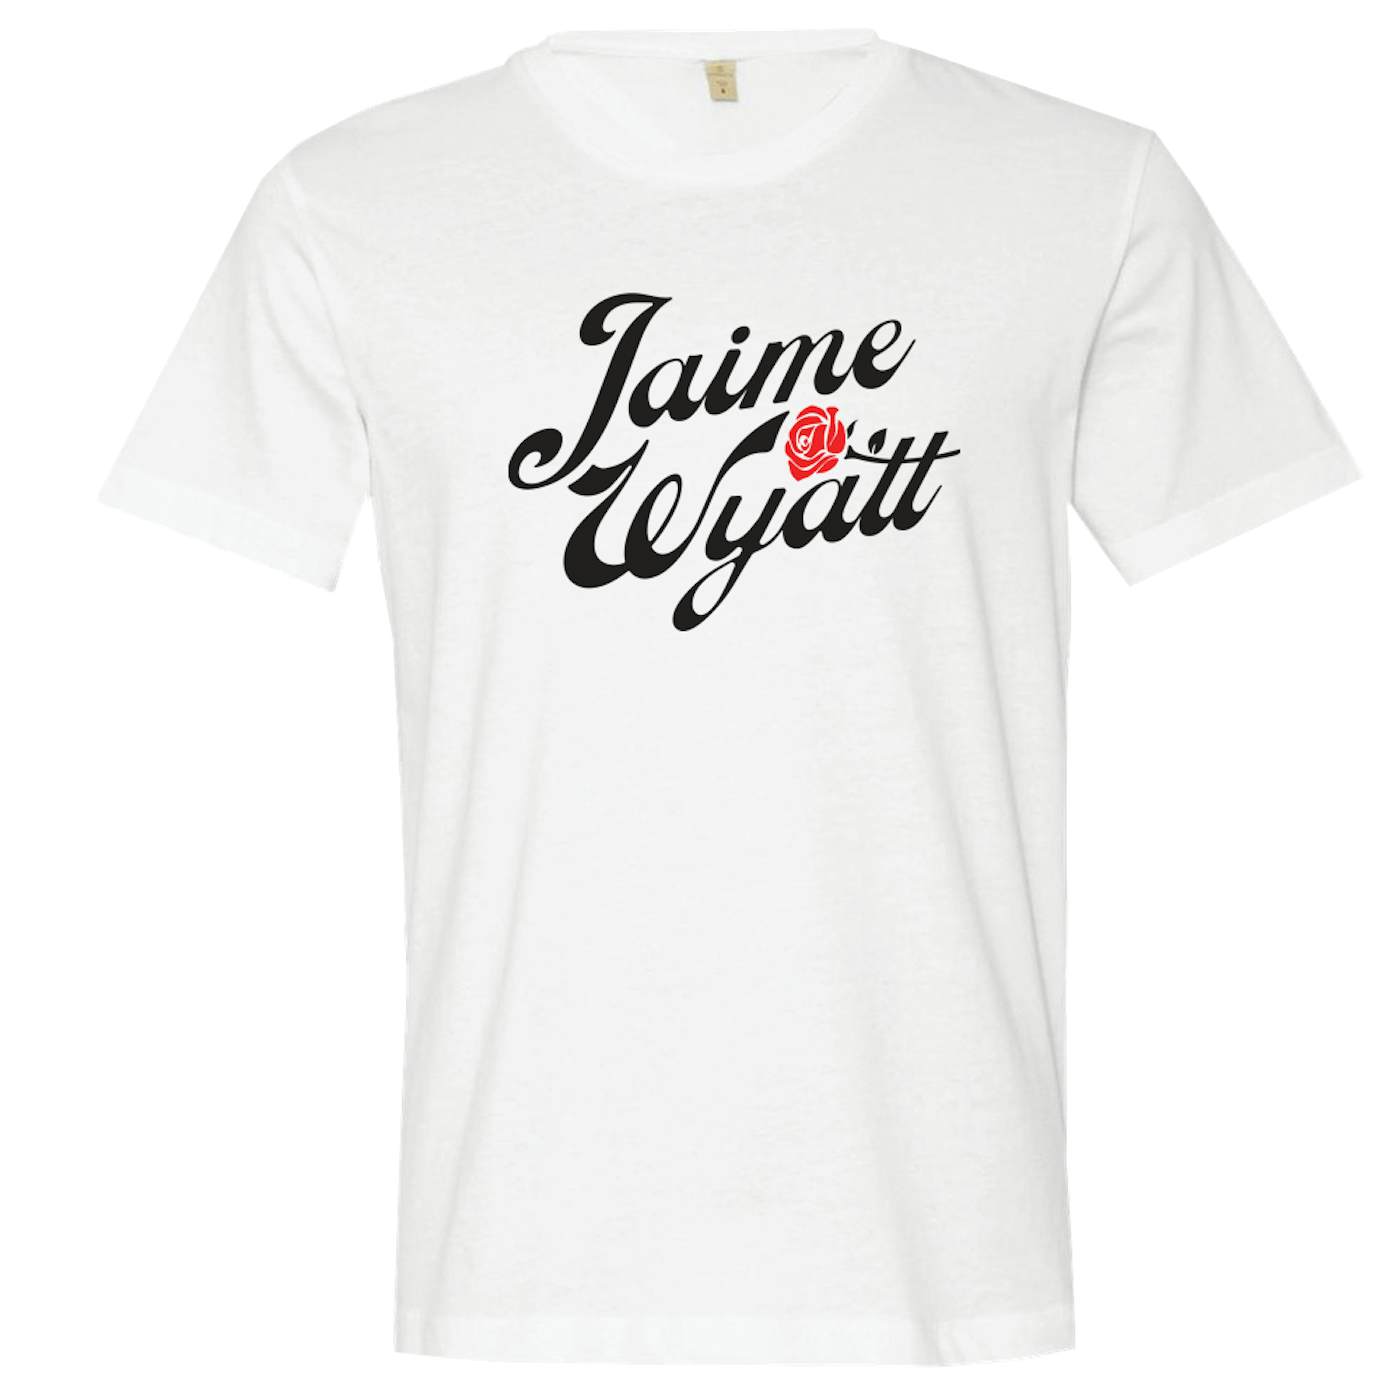 Jaime Wyatt Rose T-Shirt - White